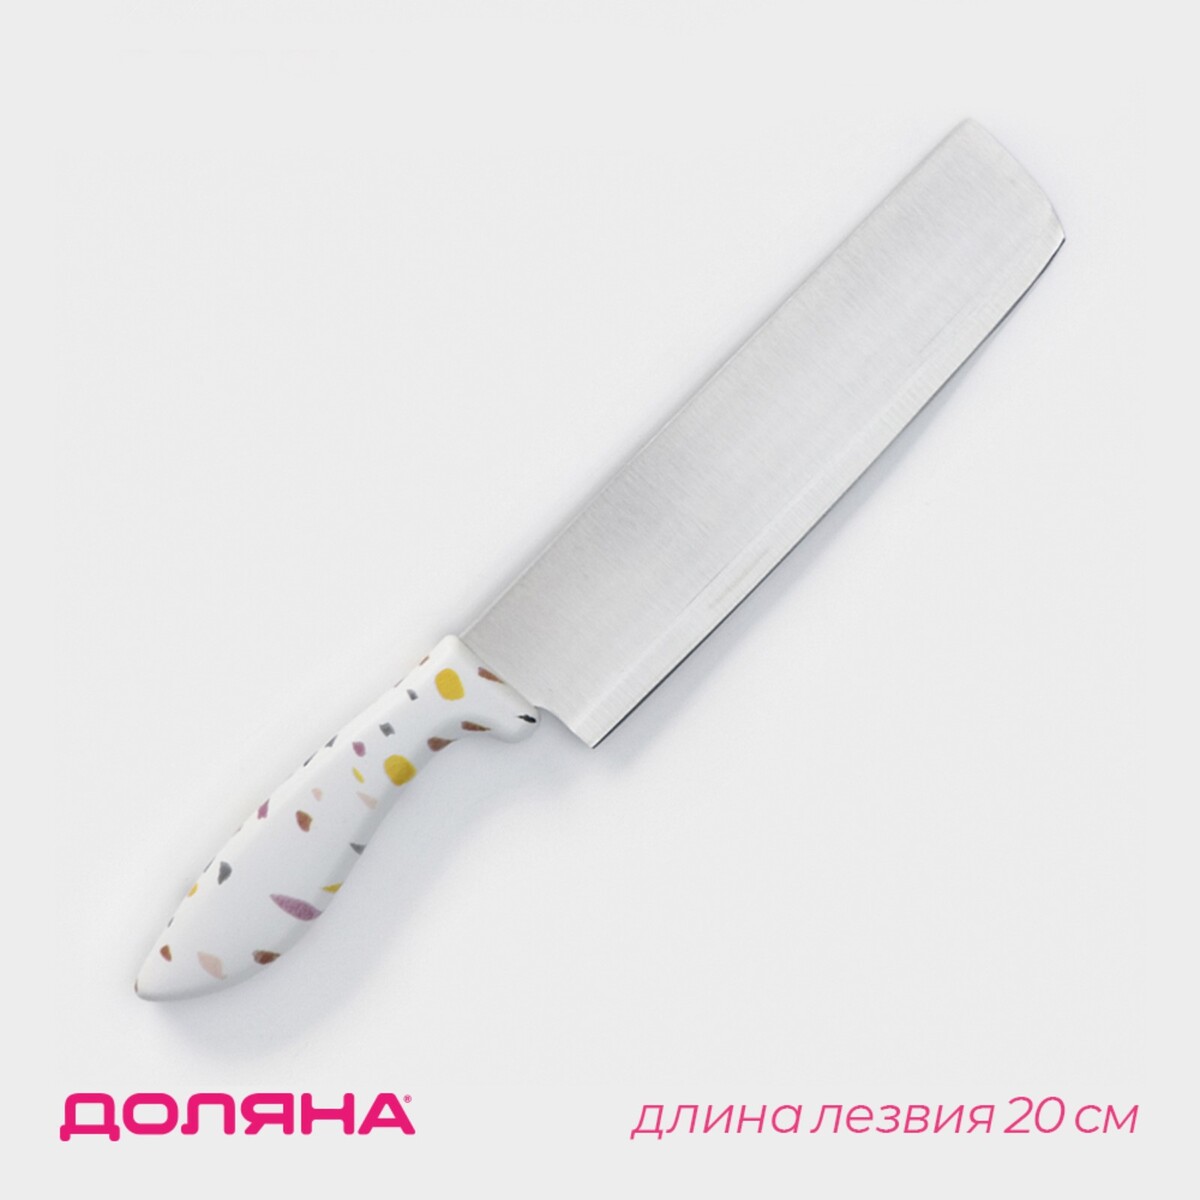 Нож - топорик кухонный доляна sparkle, лезвие 20 см, цвет белый нож для овощей кухонный доляна sparkle лезвие 9 см белый